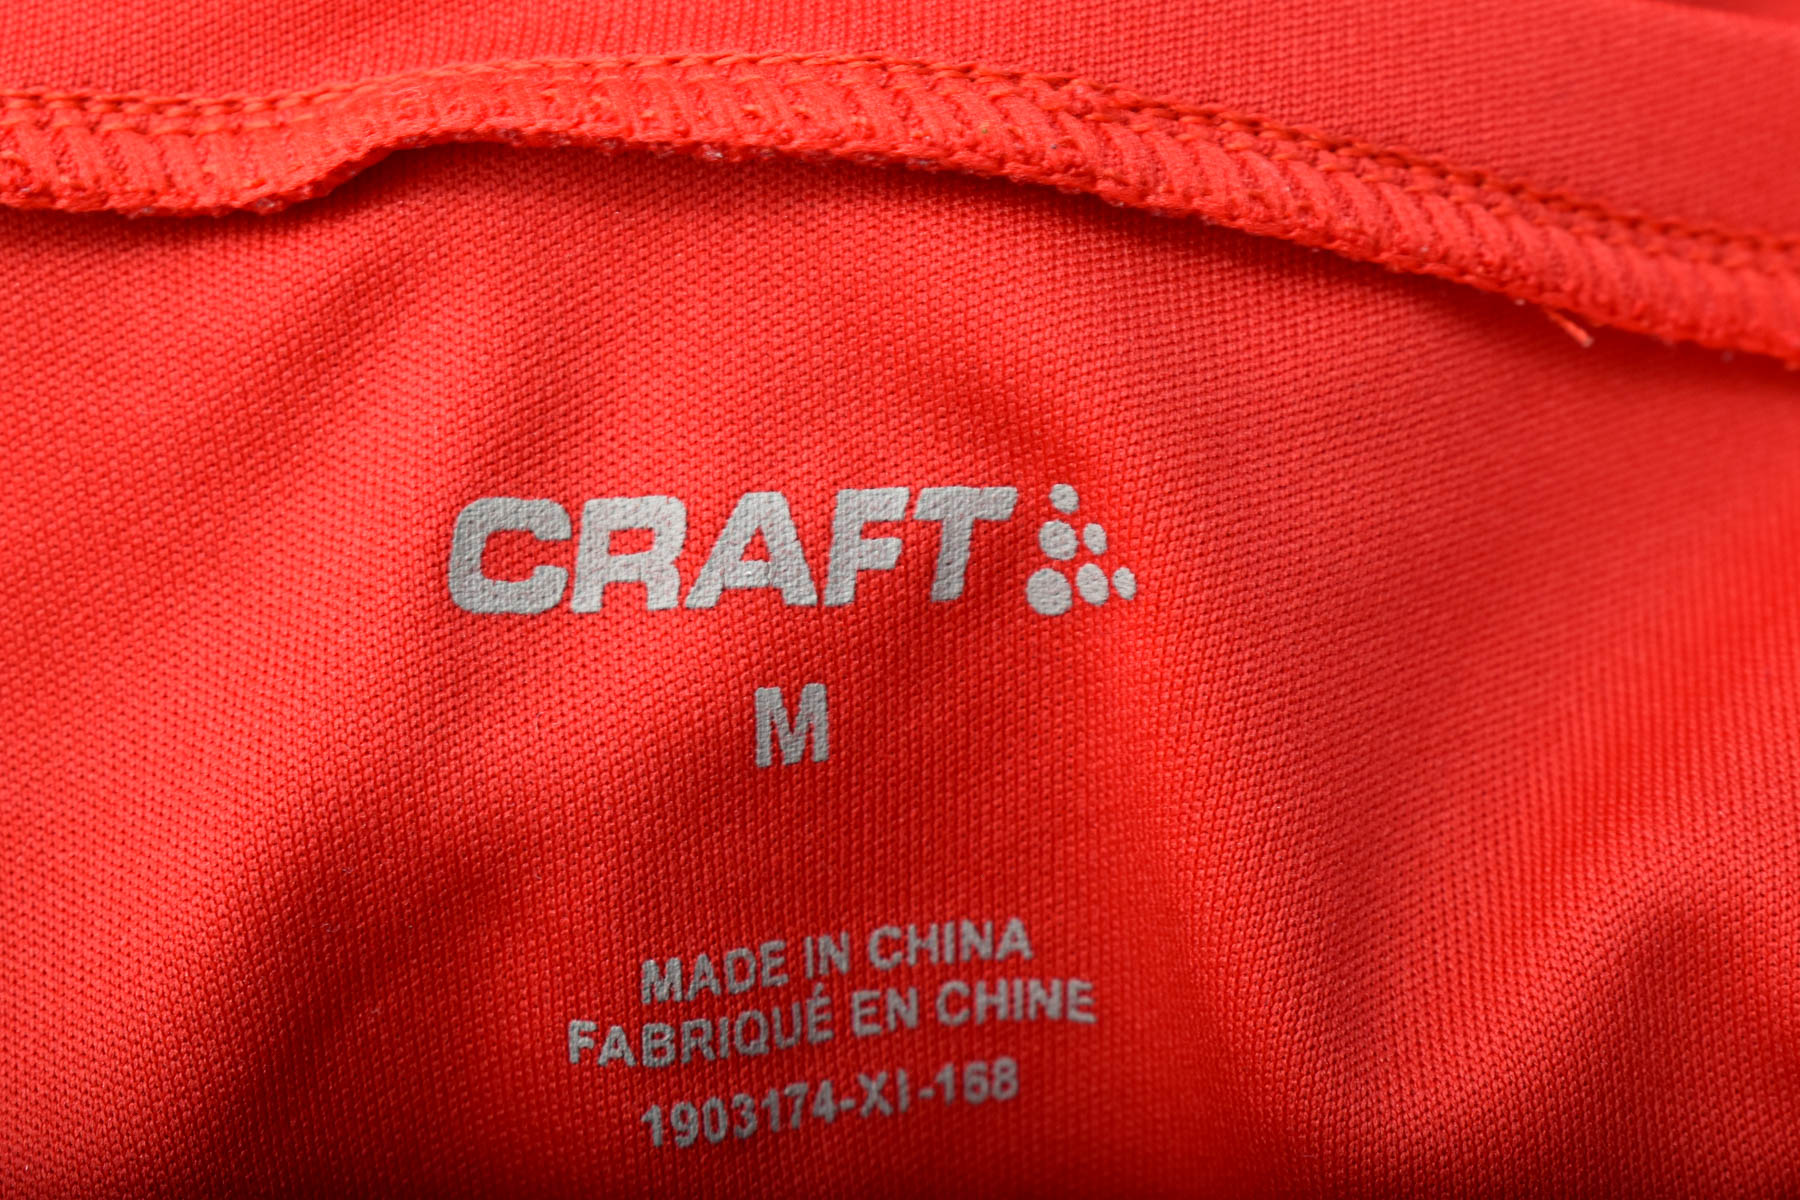 Tricou pentru bărbați - Craft - 2